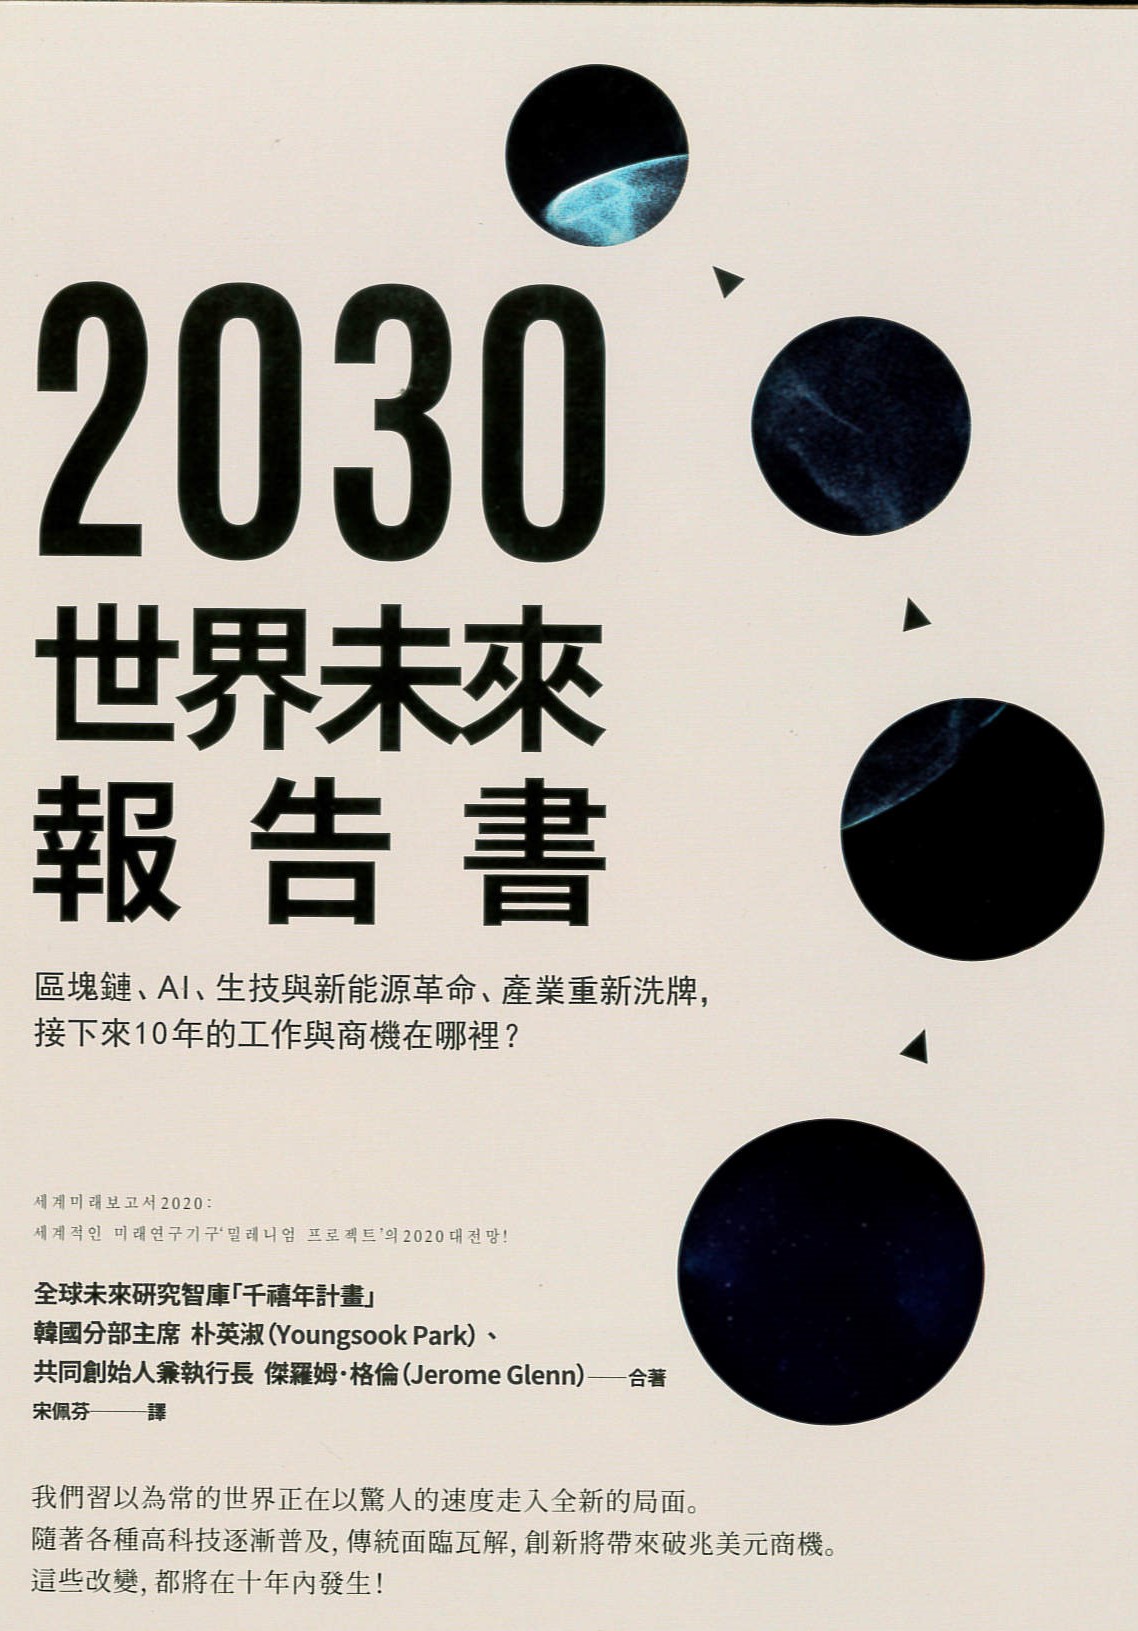 2030世界未來報告書 : 區塊鏈、AI、生技與新能源革命、產業重新洗牌, 接下來10年的工作與商機在哪裡? /